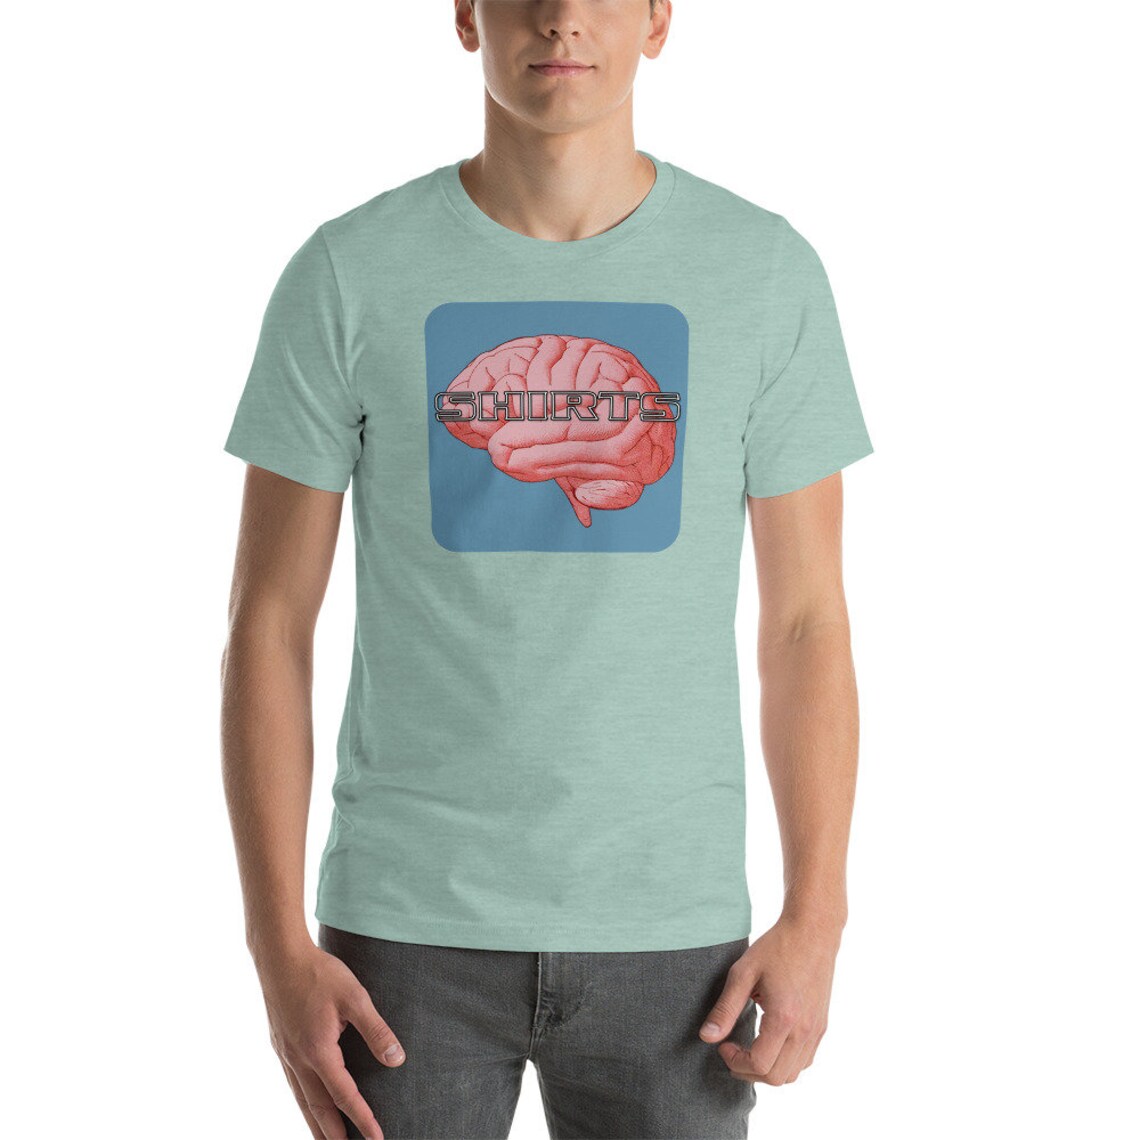 Shirts On The Brain Logo Short-Sleeve Unisex T-Shirt | Etsy